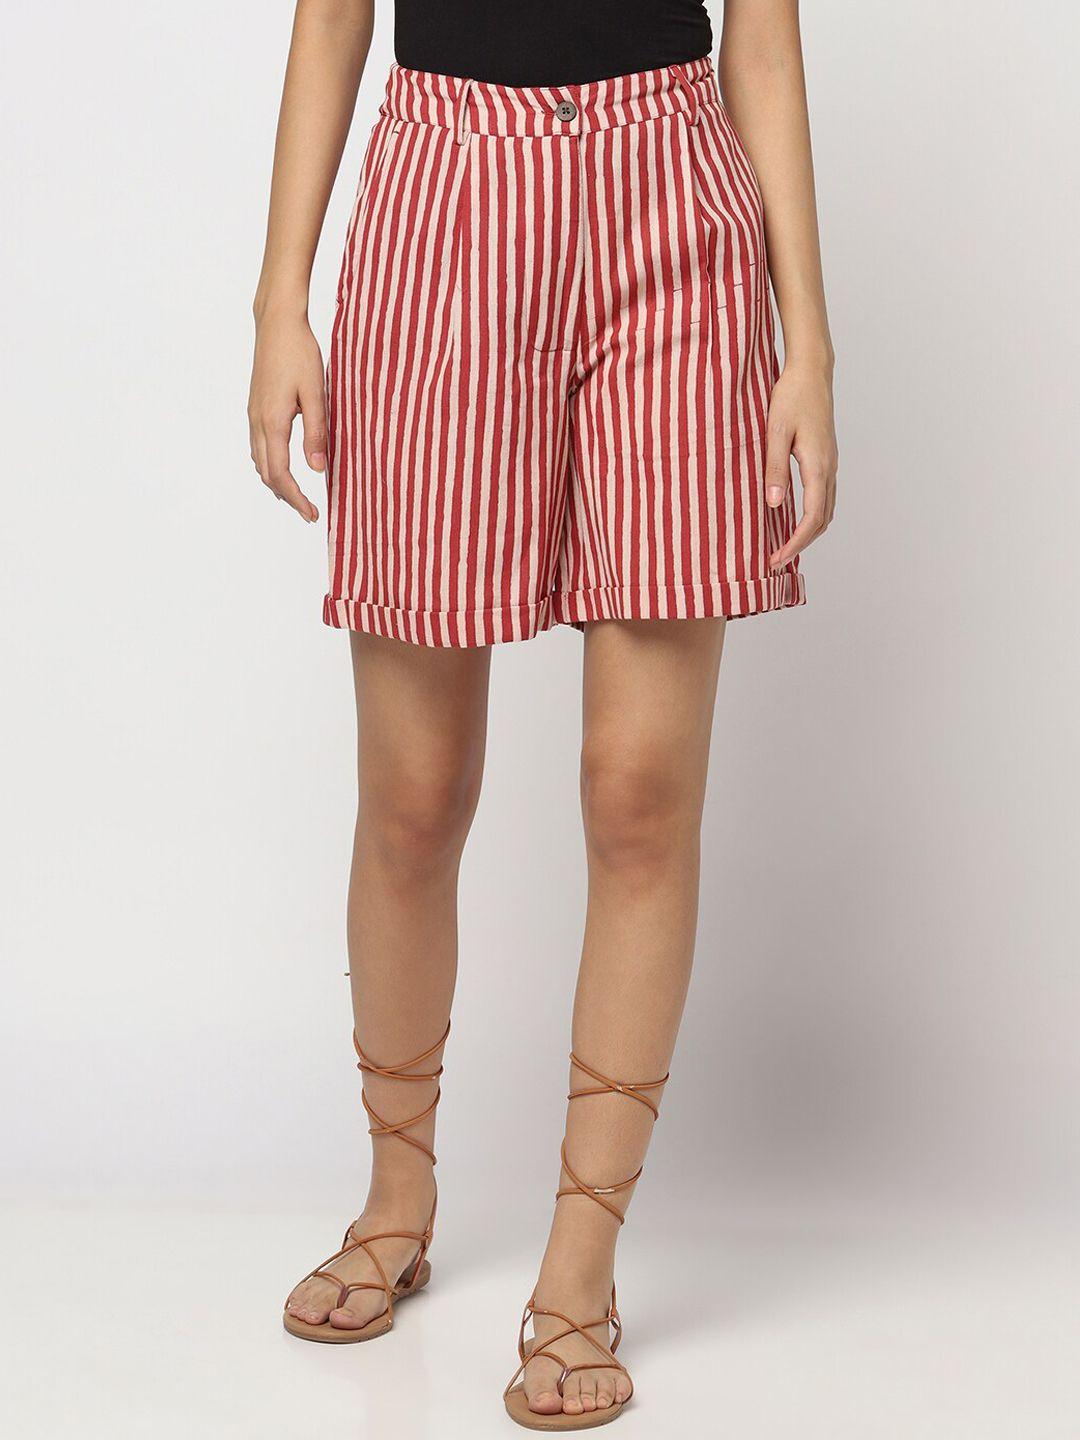 Fabindia Women Cotton Linen Striped Shorts